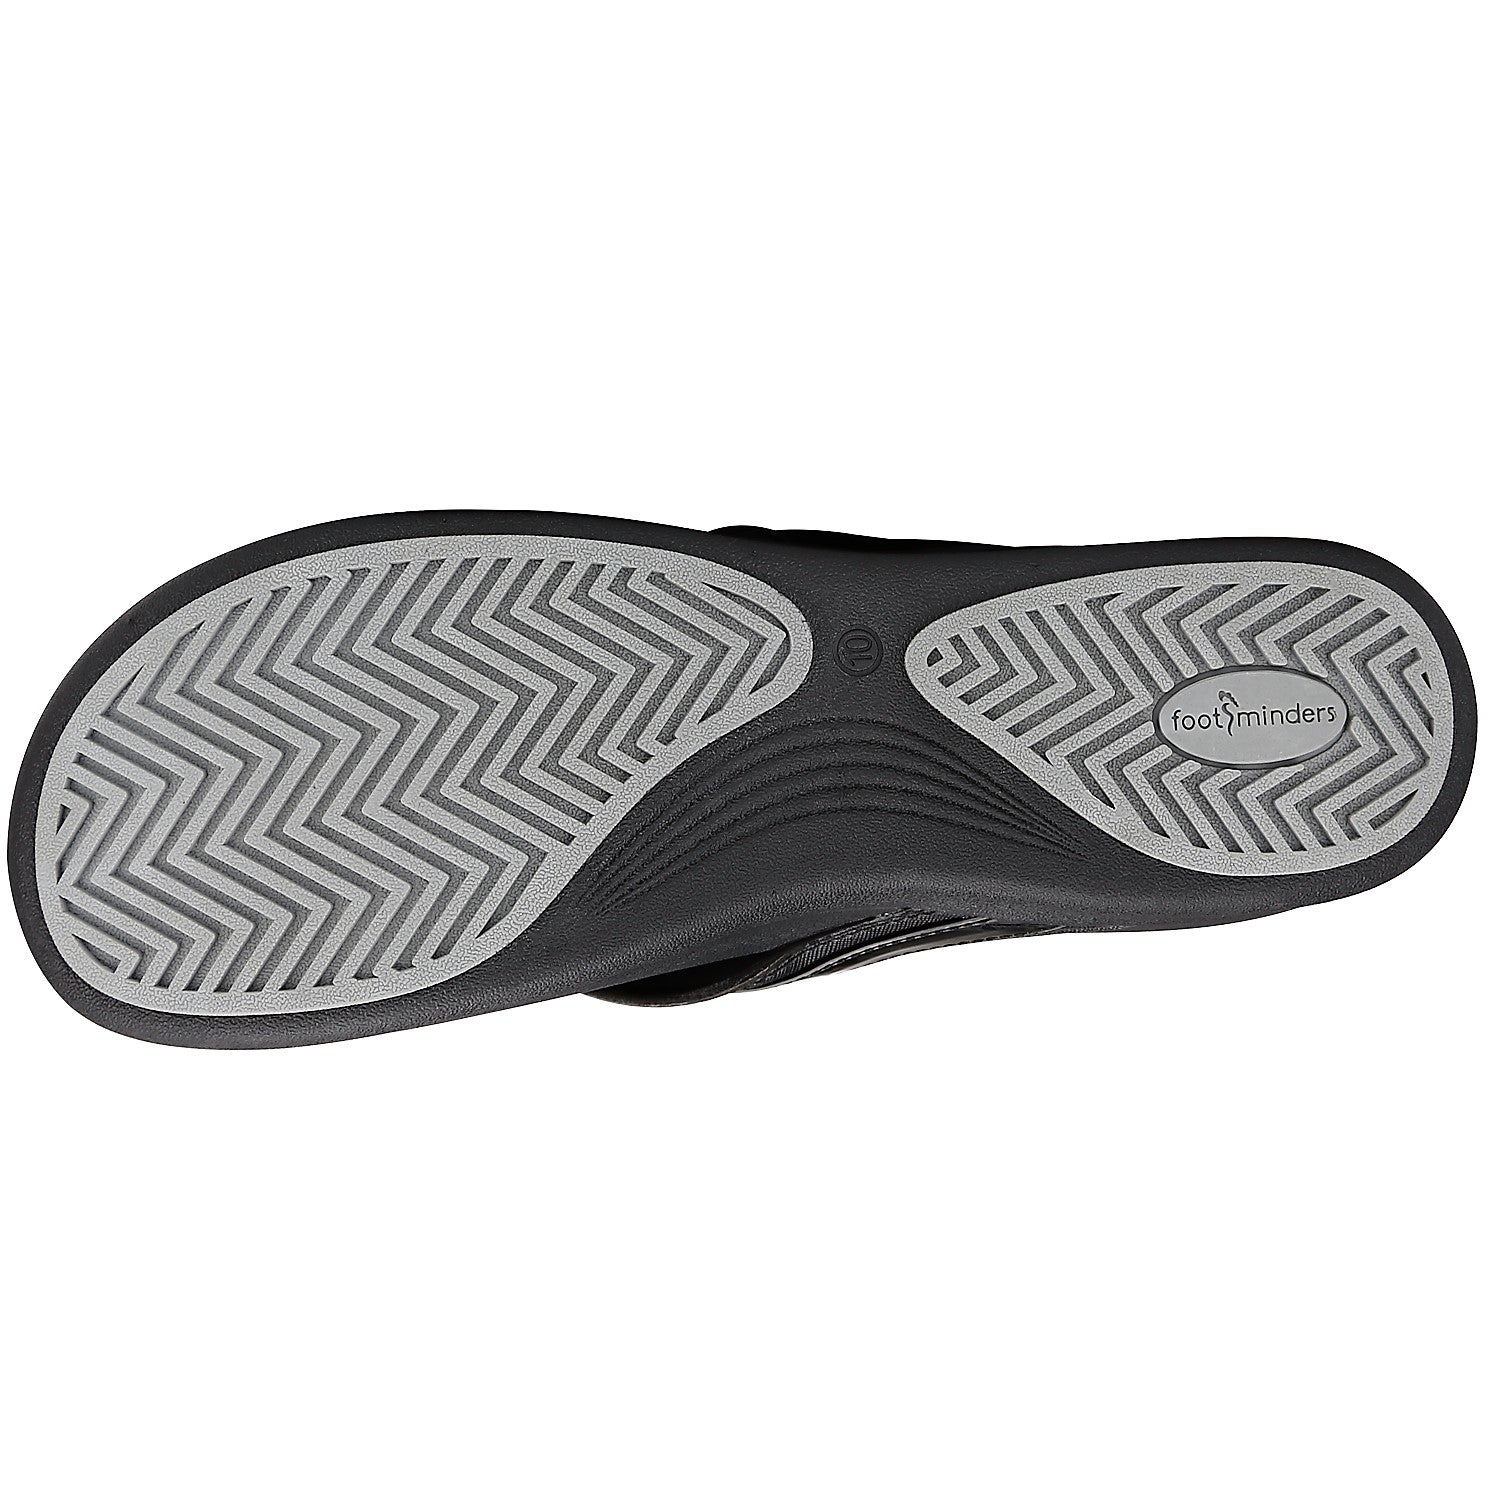 footminders flip flops